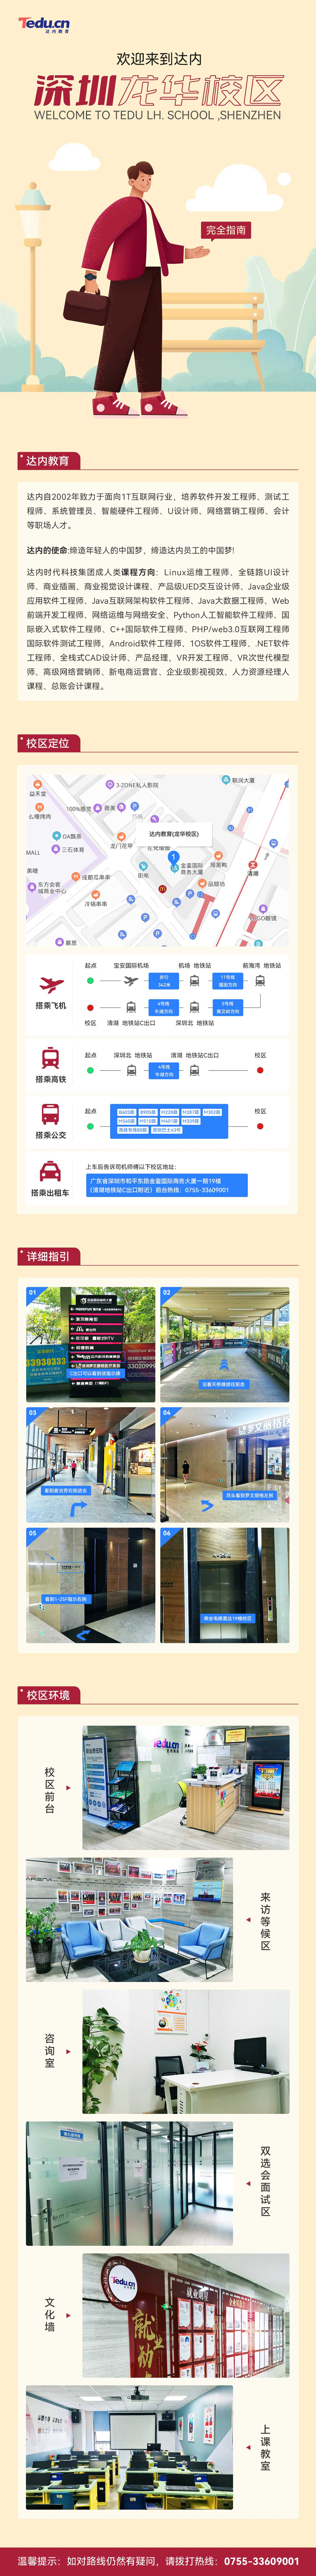 深圳<a style='color:blue' href='//swbp.com.cn/'>達內</a>龍華IT培訓中心